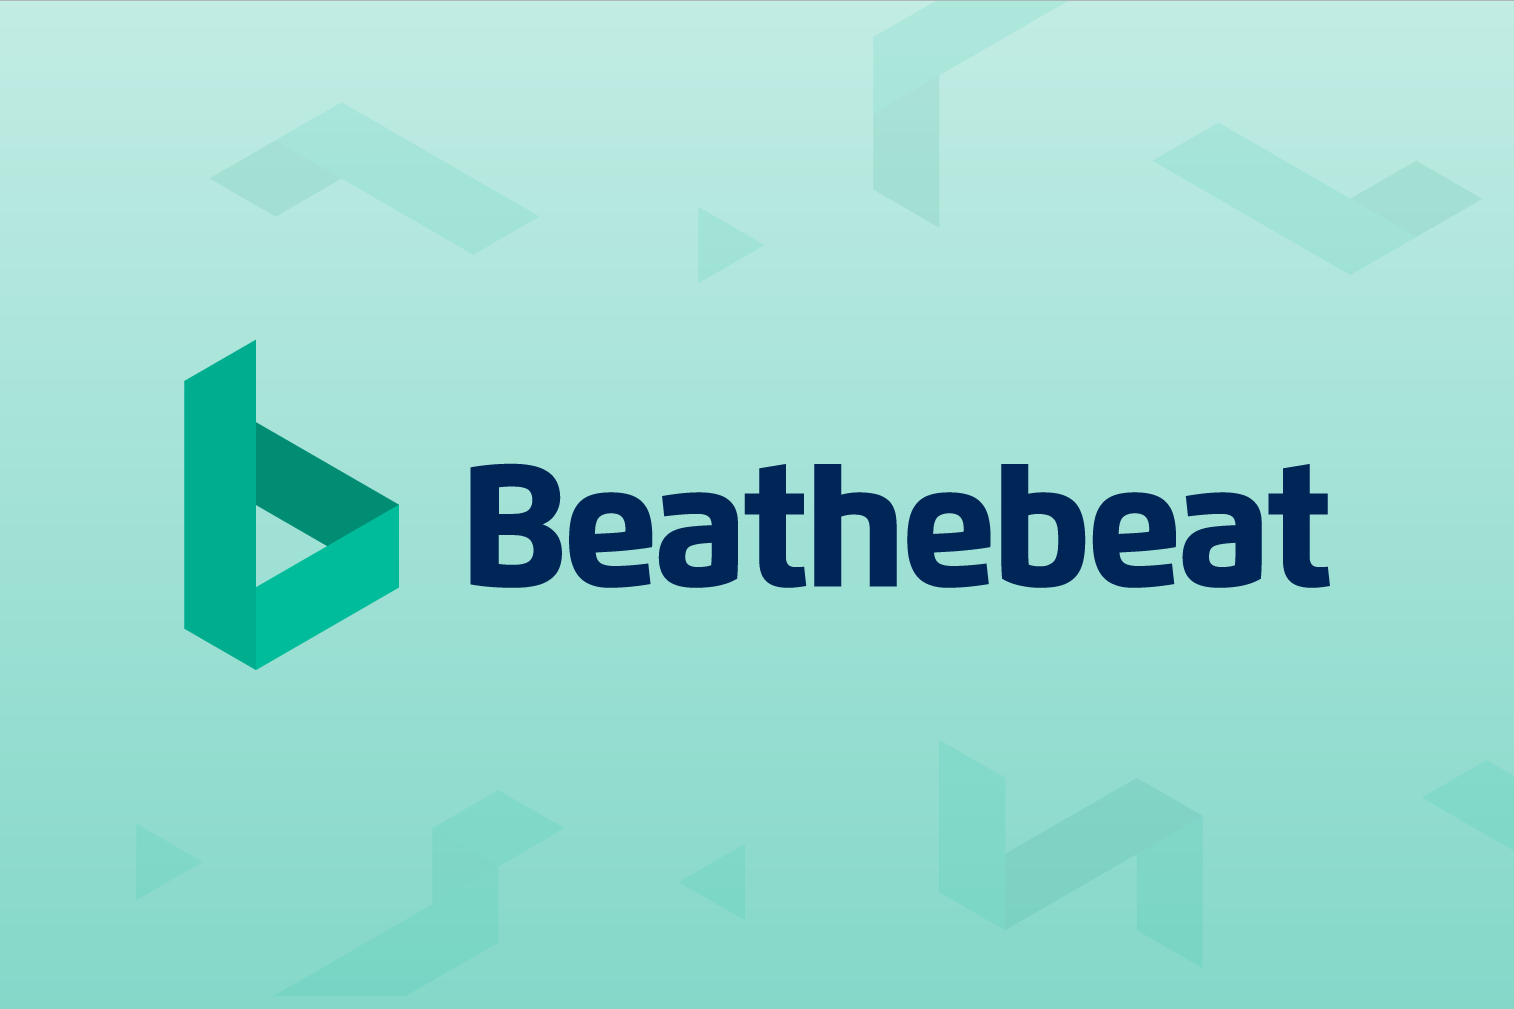 Beathebeat